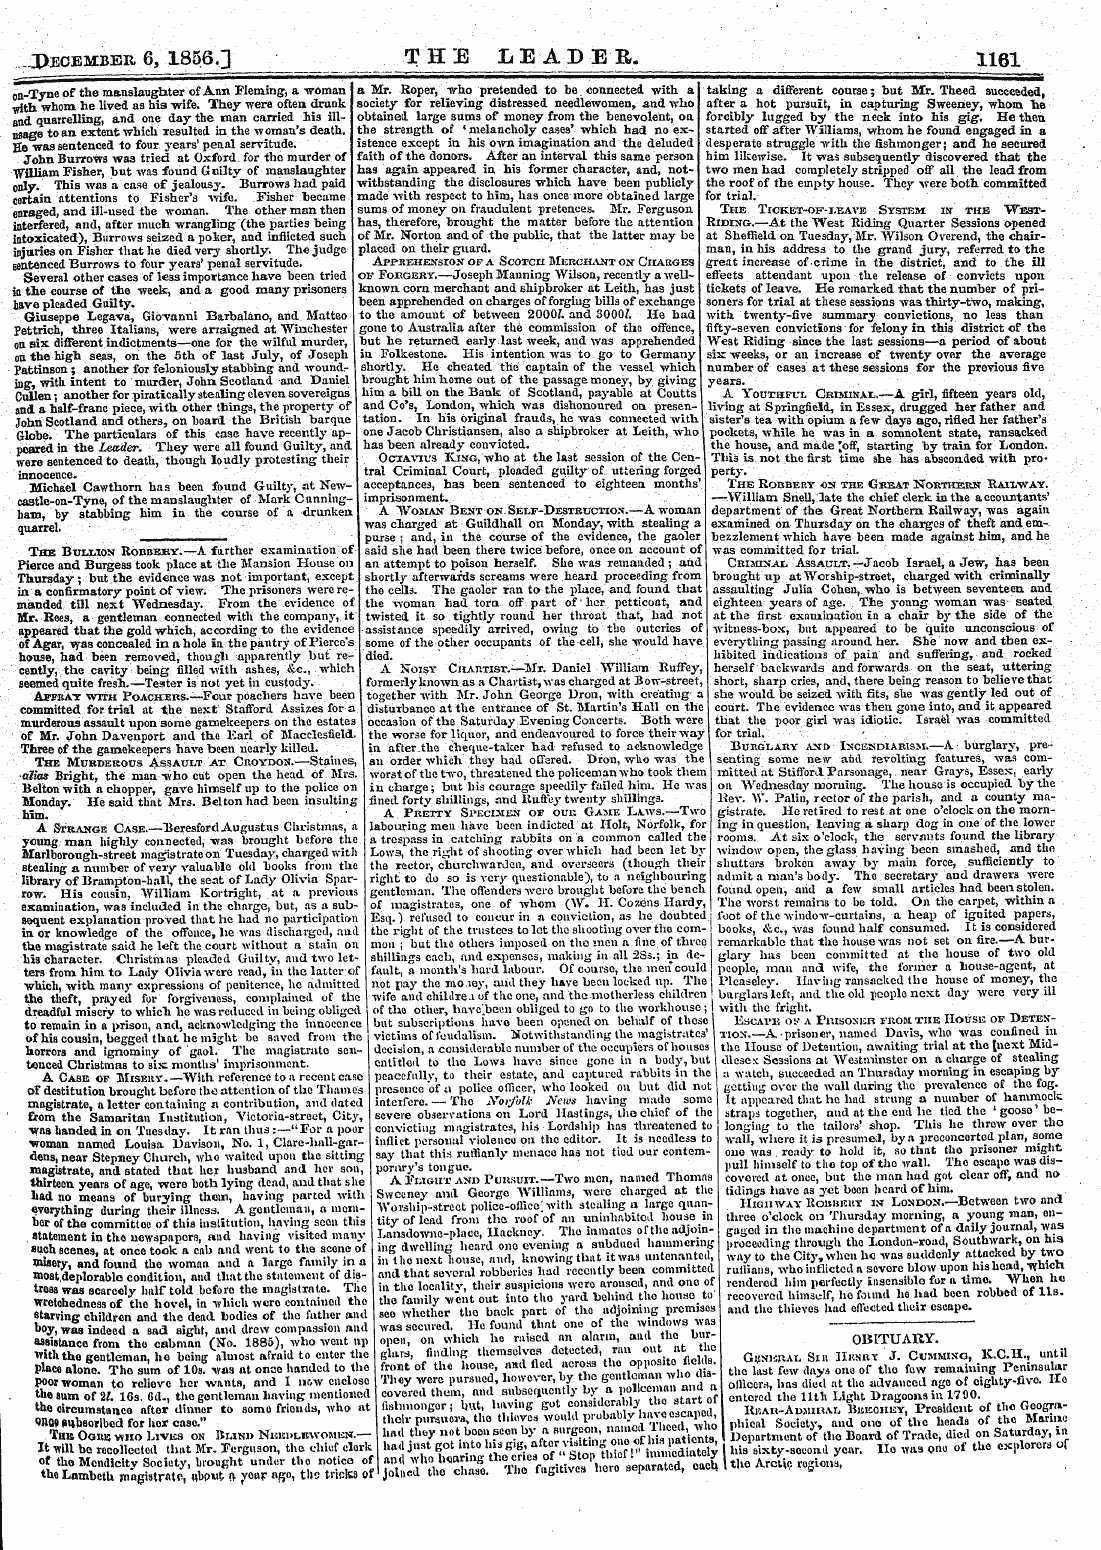 Leader (1850-1860): jS F Y, 2nd edition - 1 .I J- ^December 6, 1856.] _ __ The Lea...